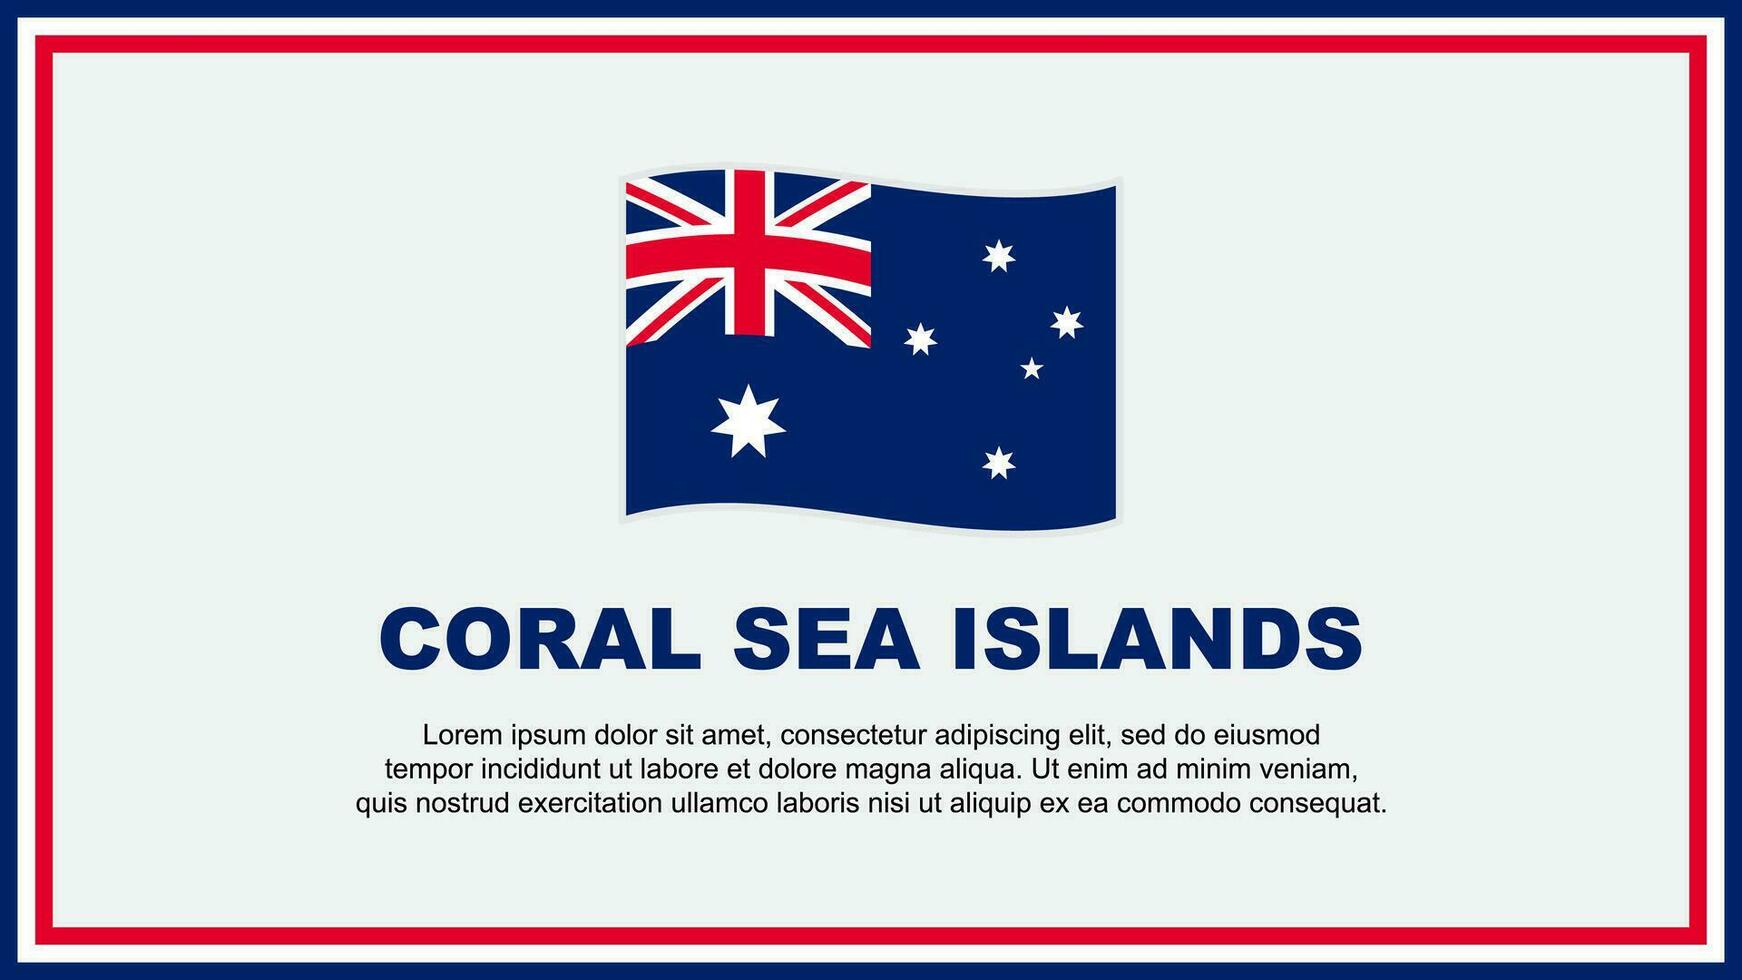 korall hav öar flagga abstrakt bakgrund design mall. korall hav öar oberoende dag baner social media vektor illustration. korall hav öar baner